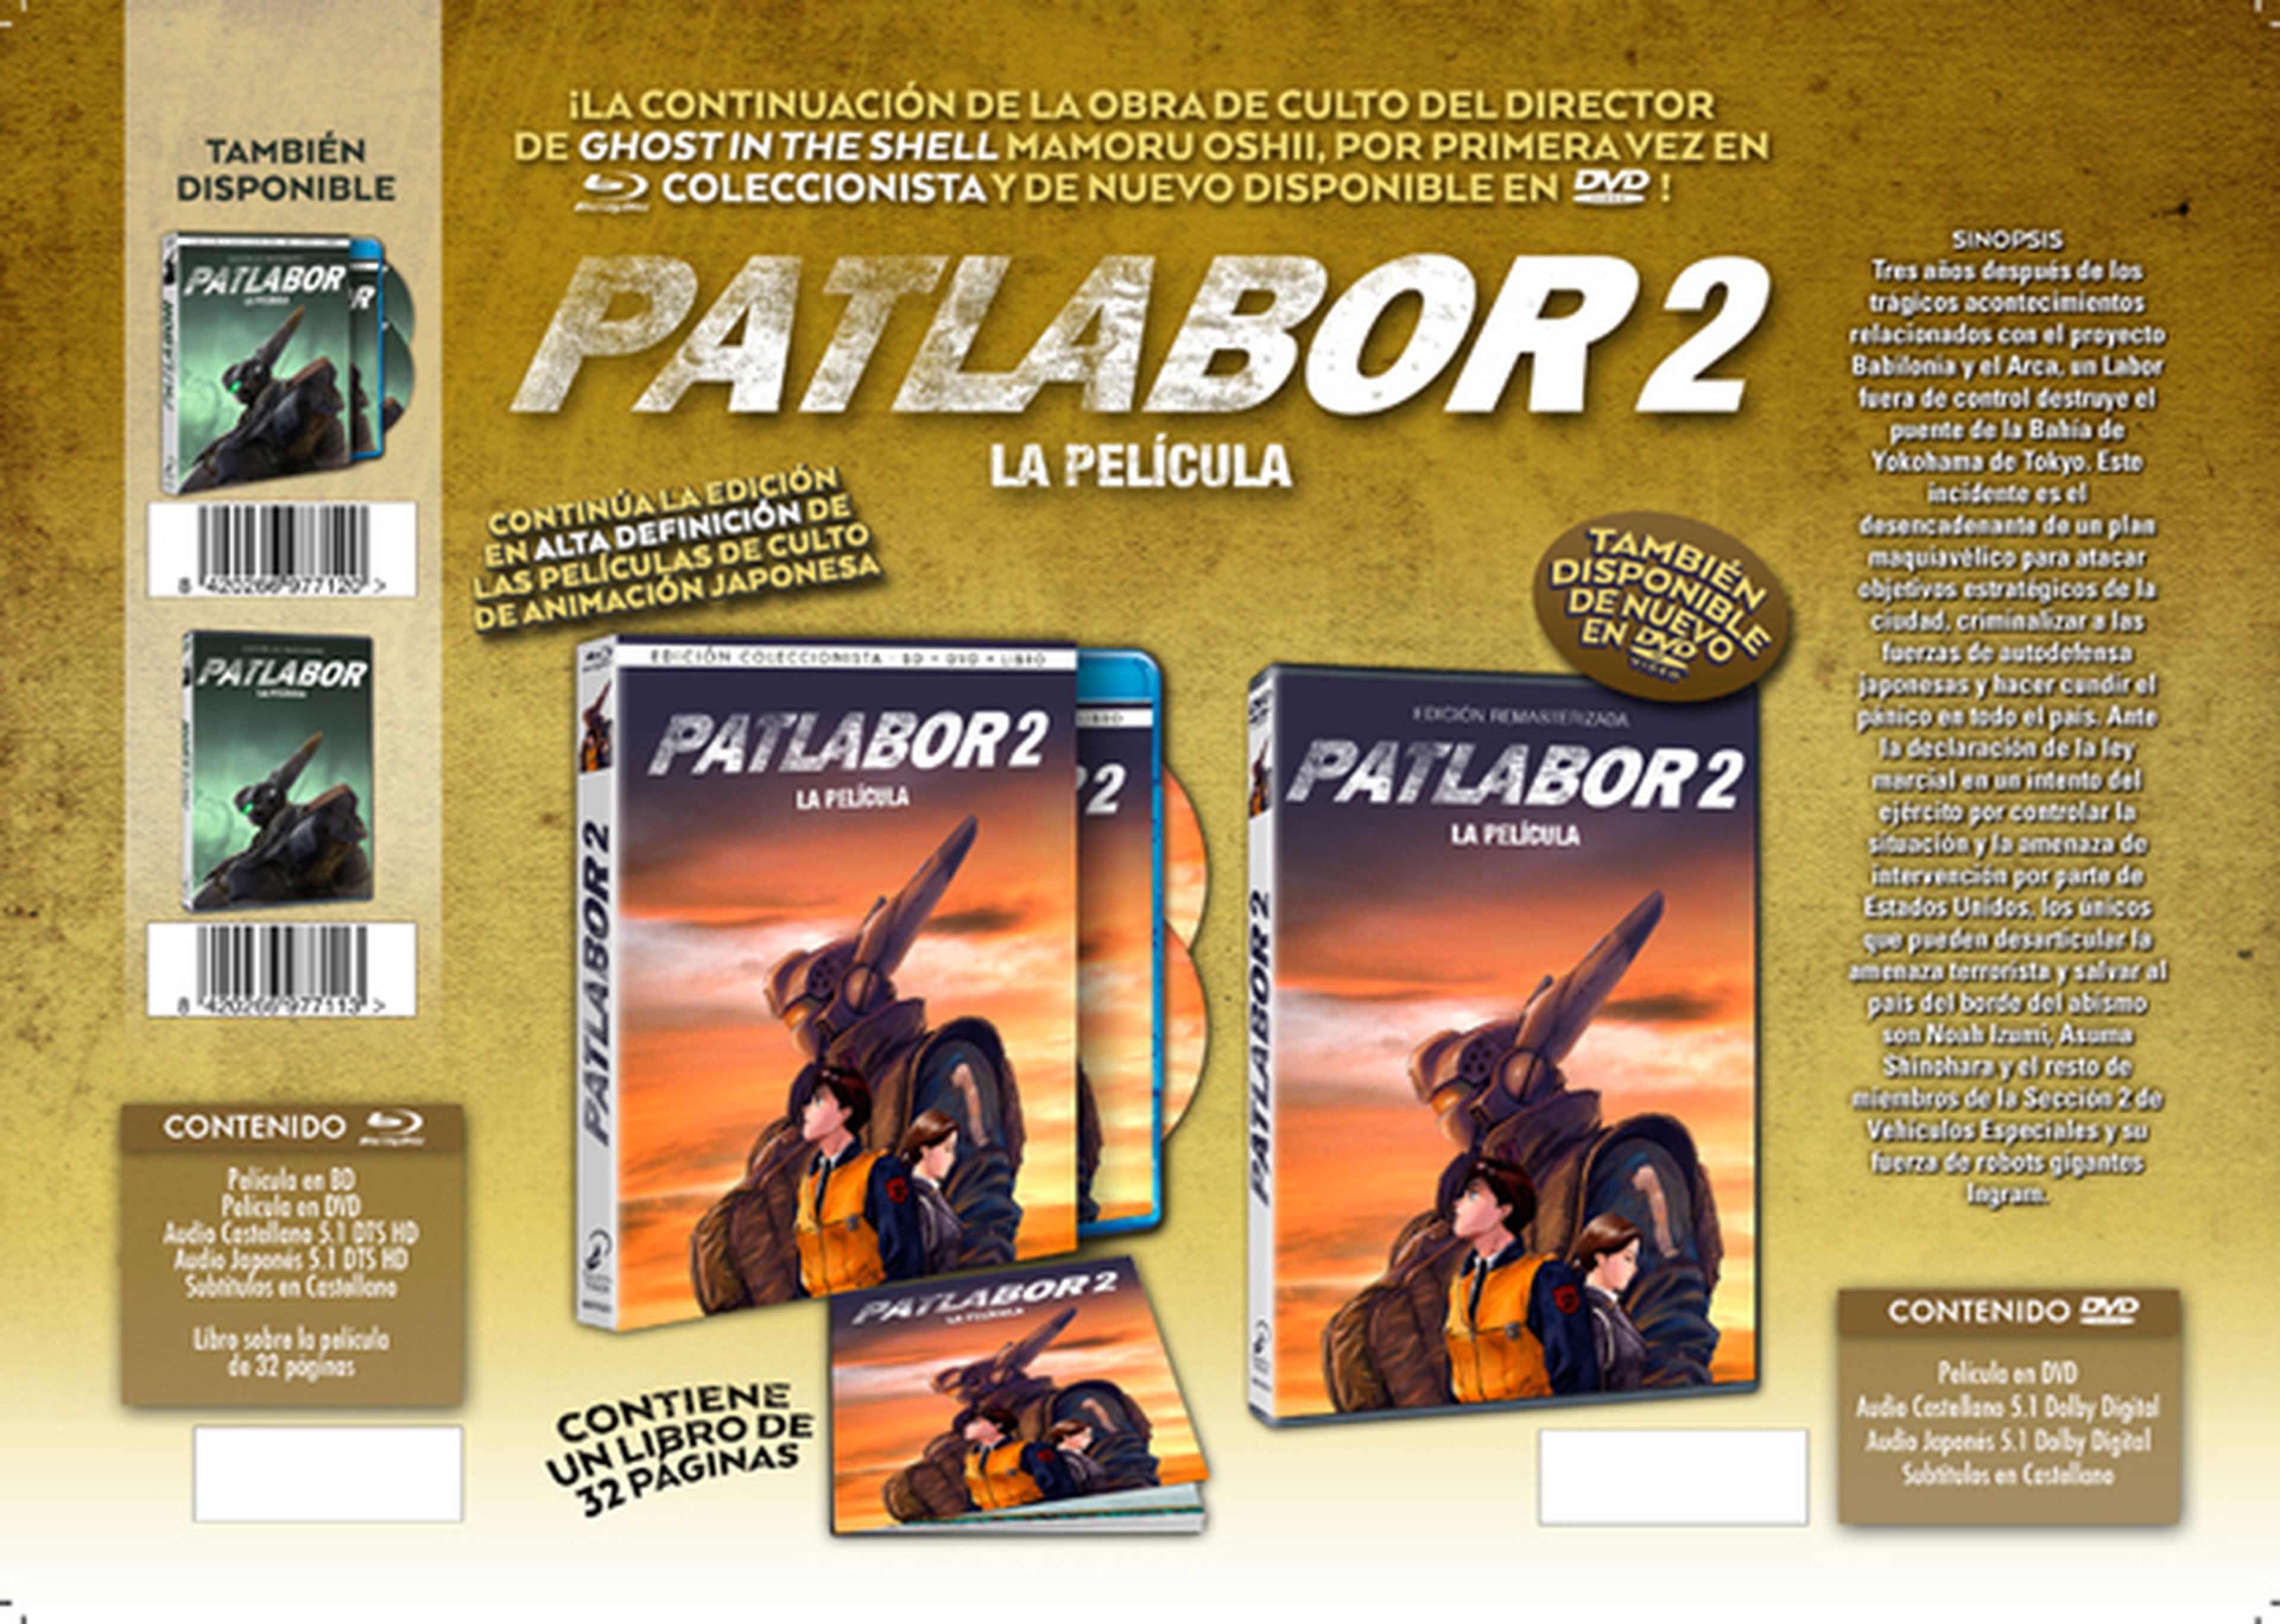 Patlabor 2 - DVD y Blu-Ray llegan en febrero